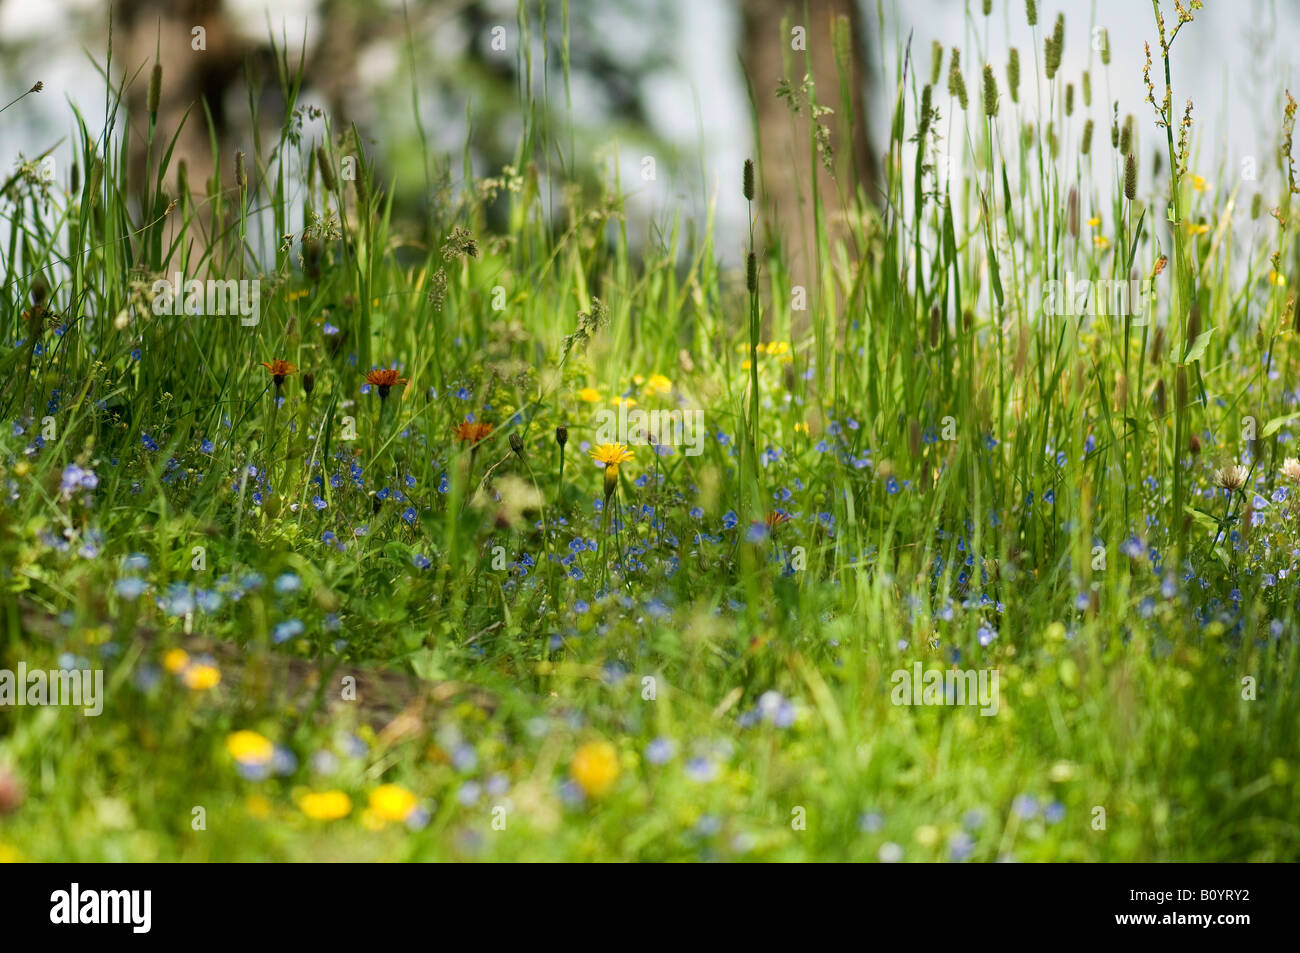 Wild flowers in field Stock Photo